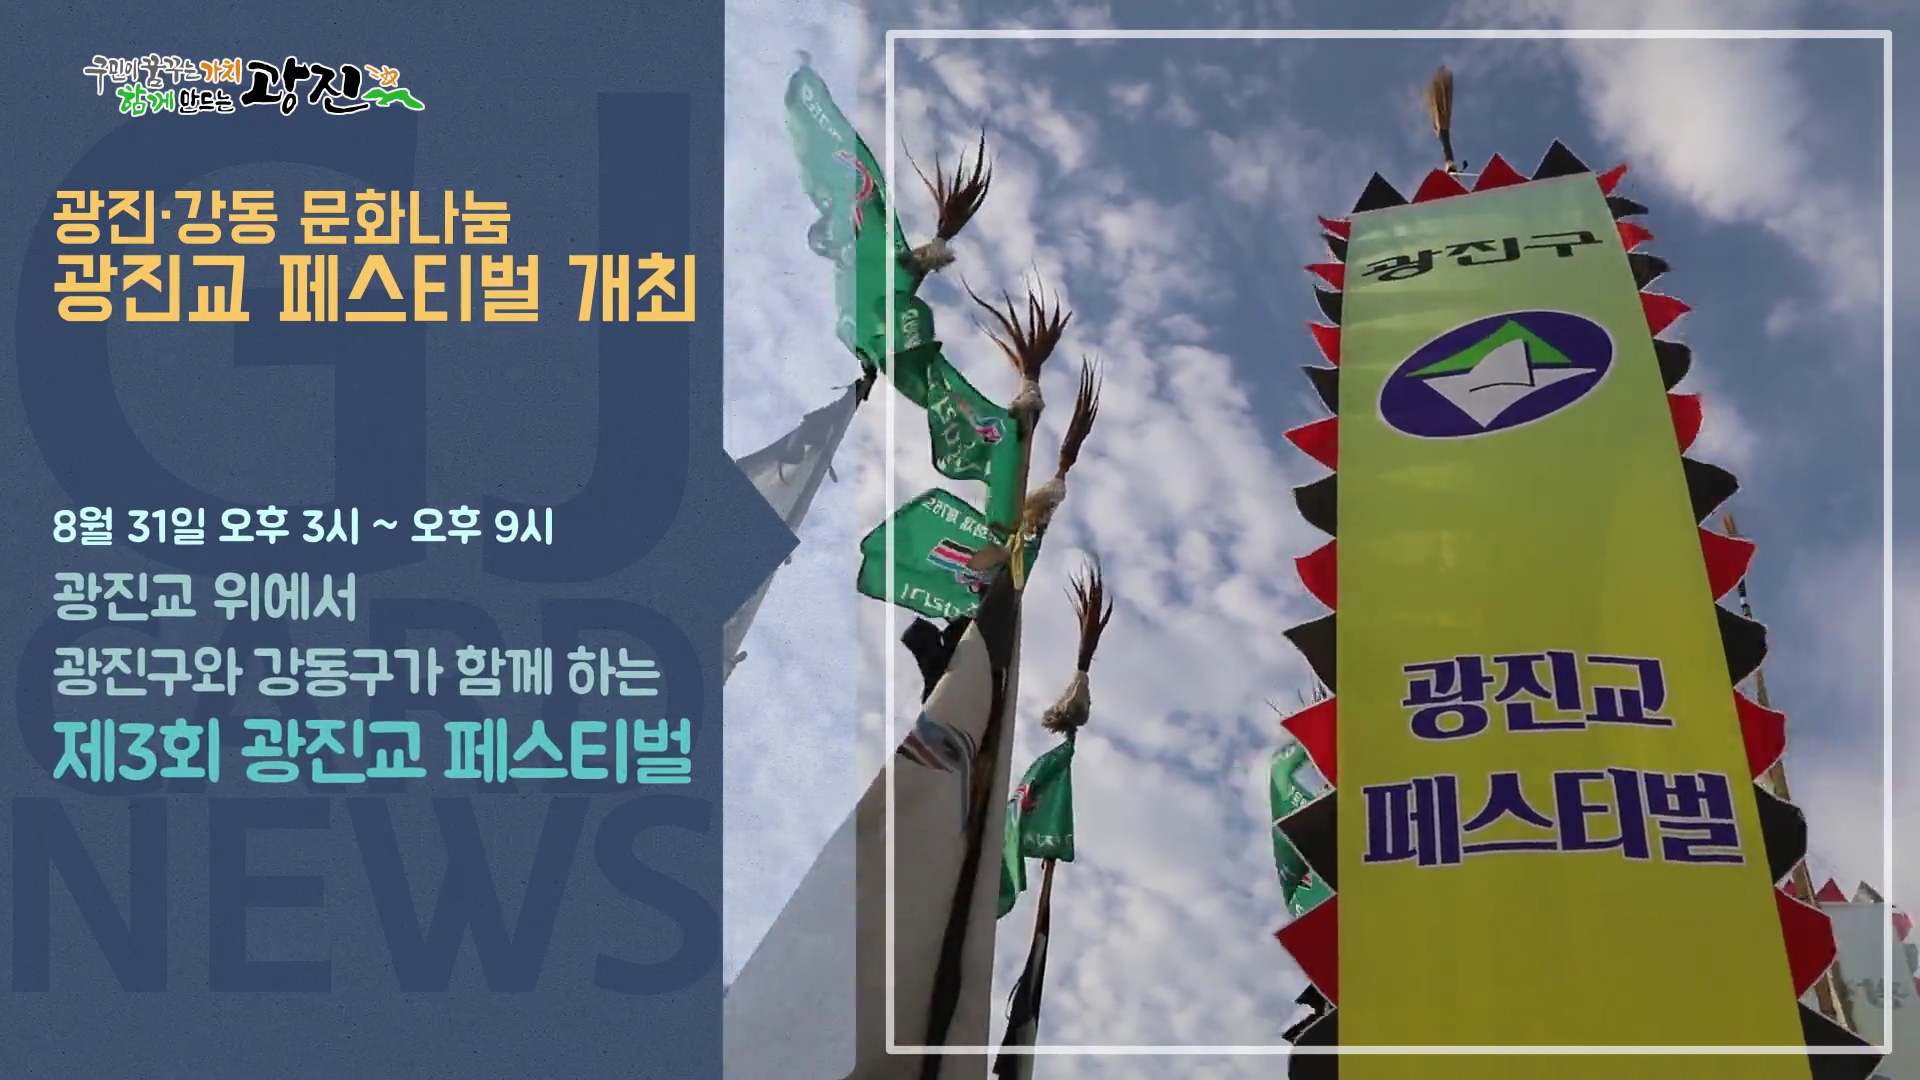 [광진카드뉴스 - 8월 넷째 주] 제3회 광진교 페스티벌 개최 안내